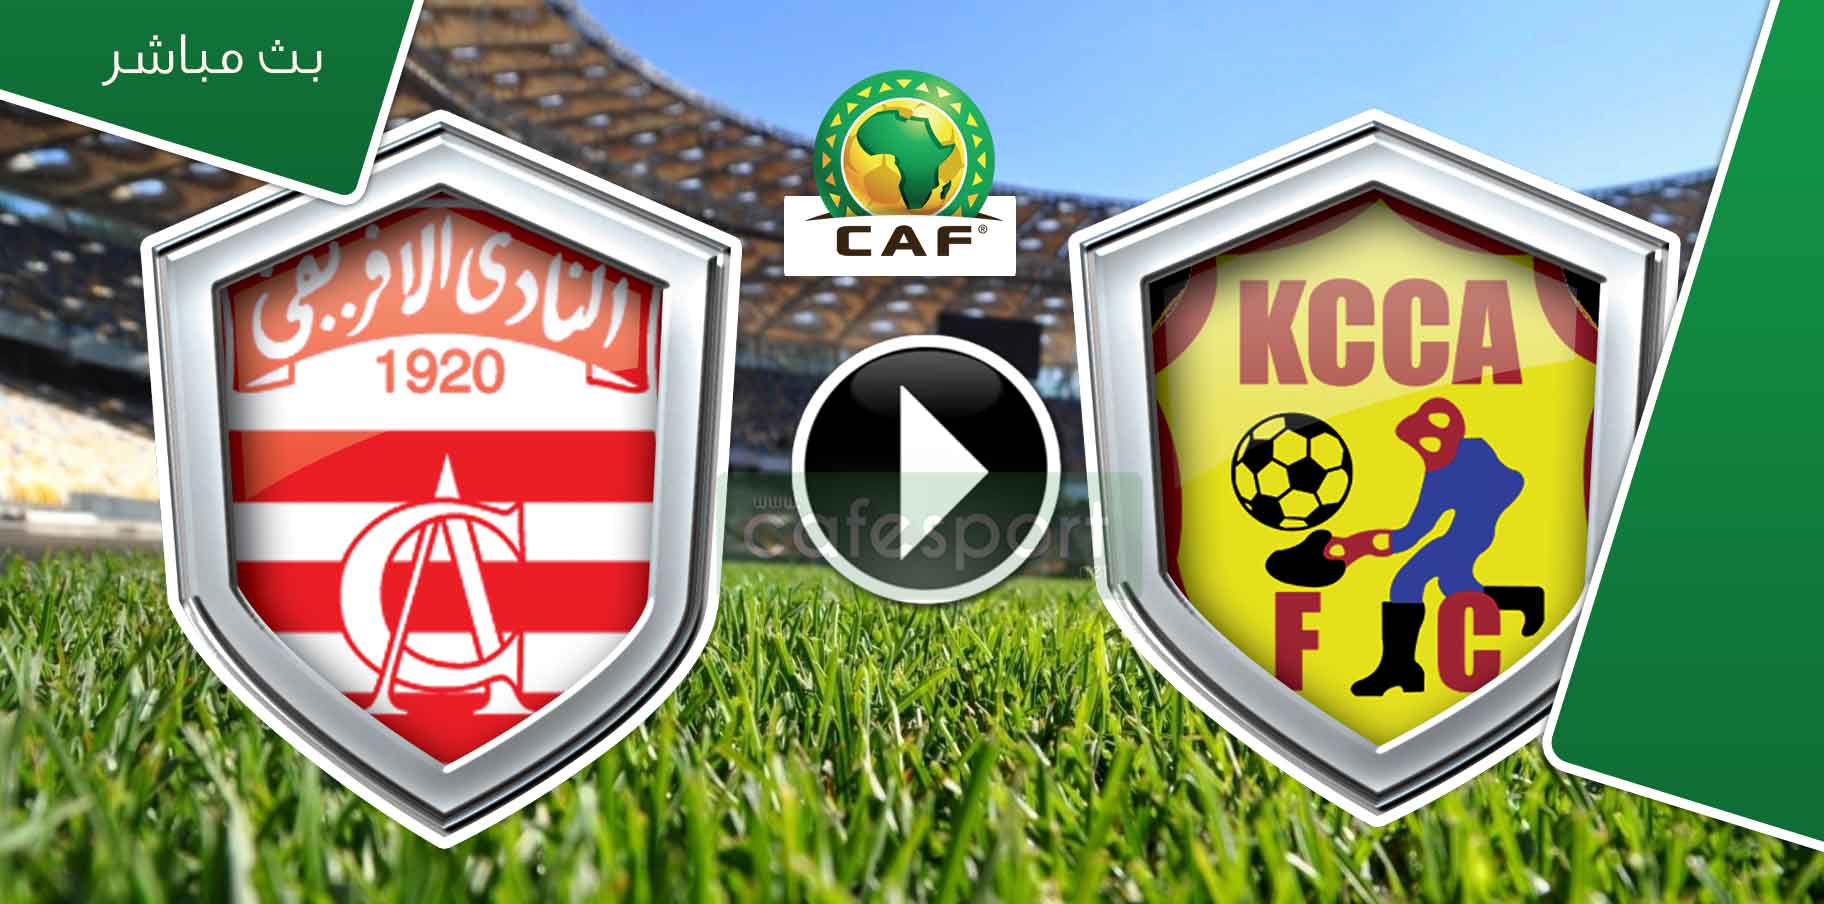 بث مباشر لمباراة النادي الافريقي -كامبالا سيتي